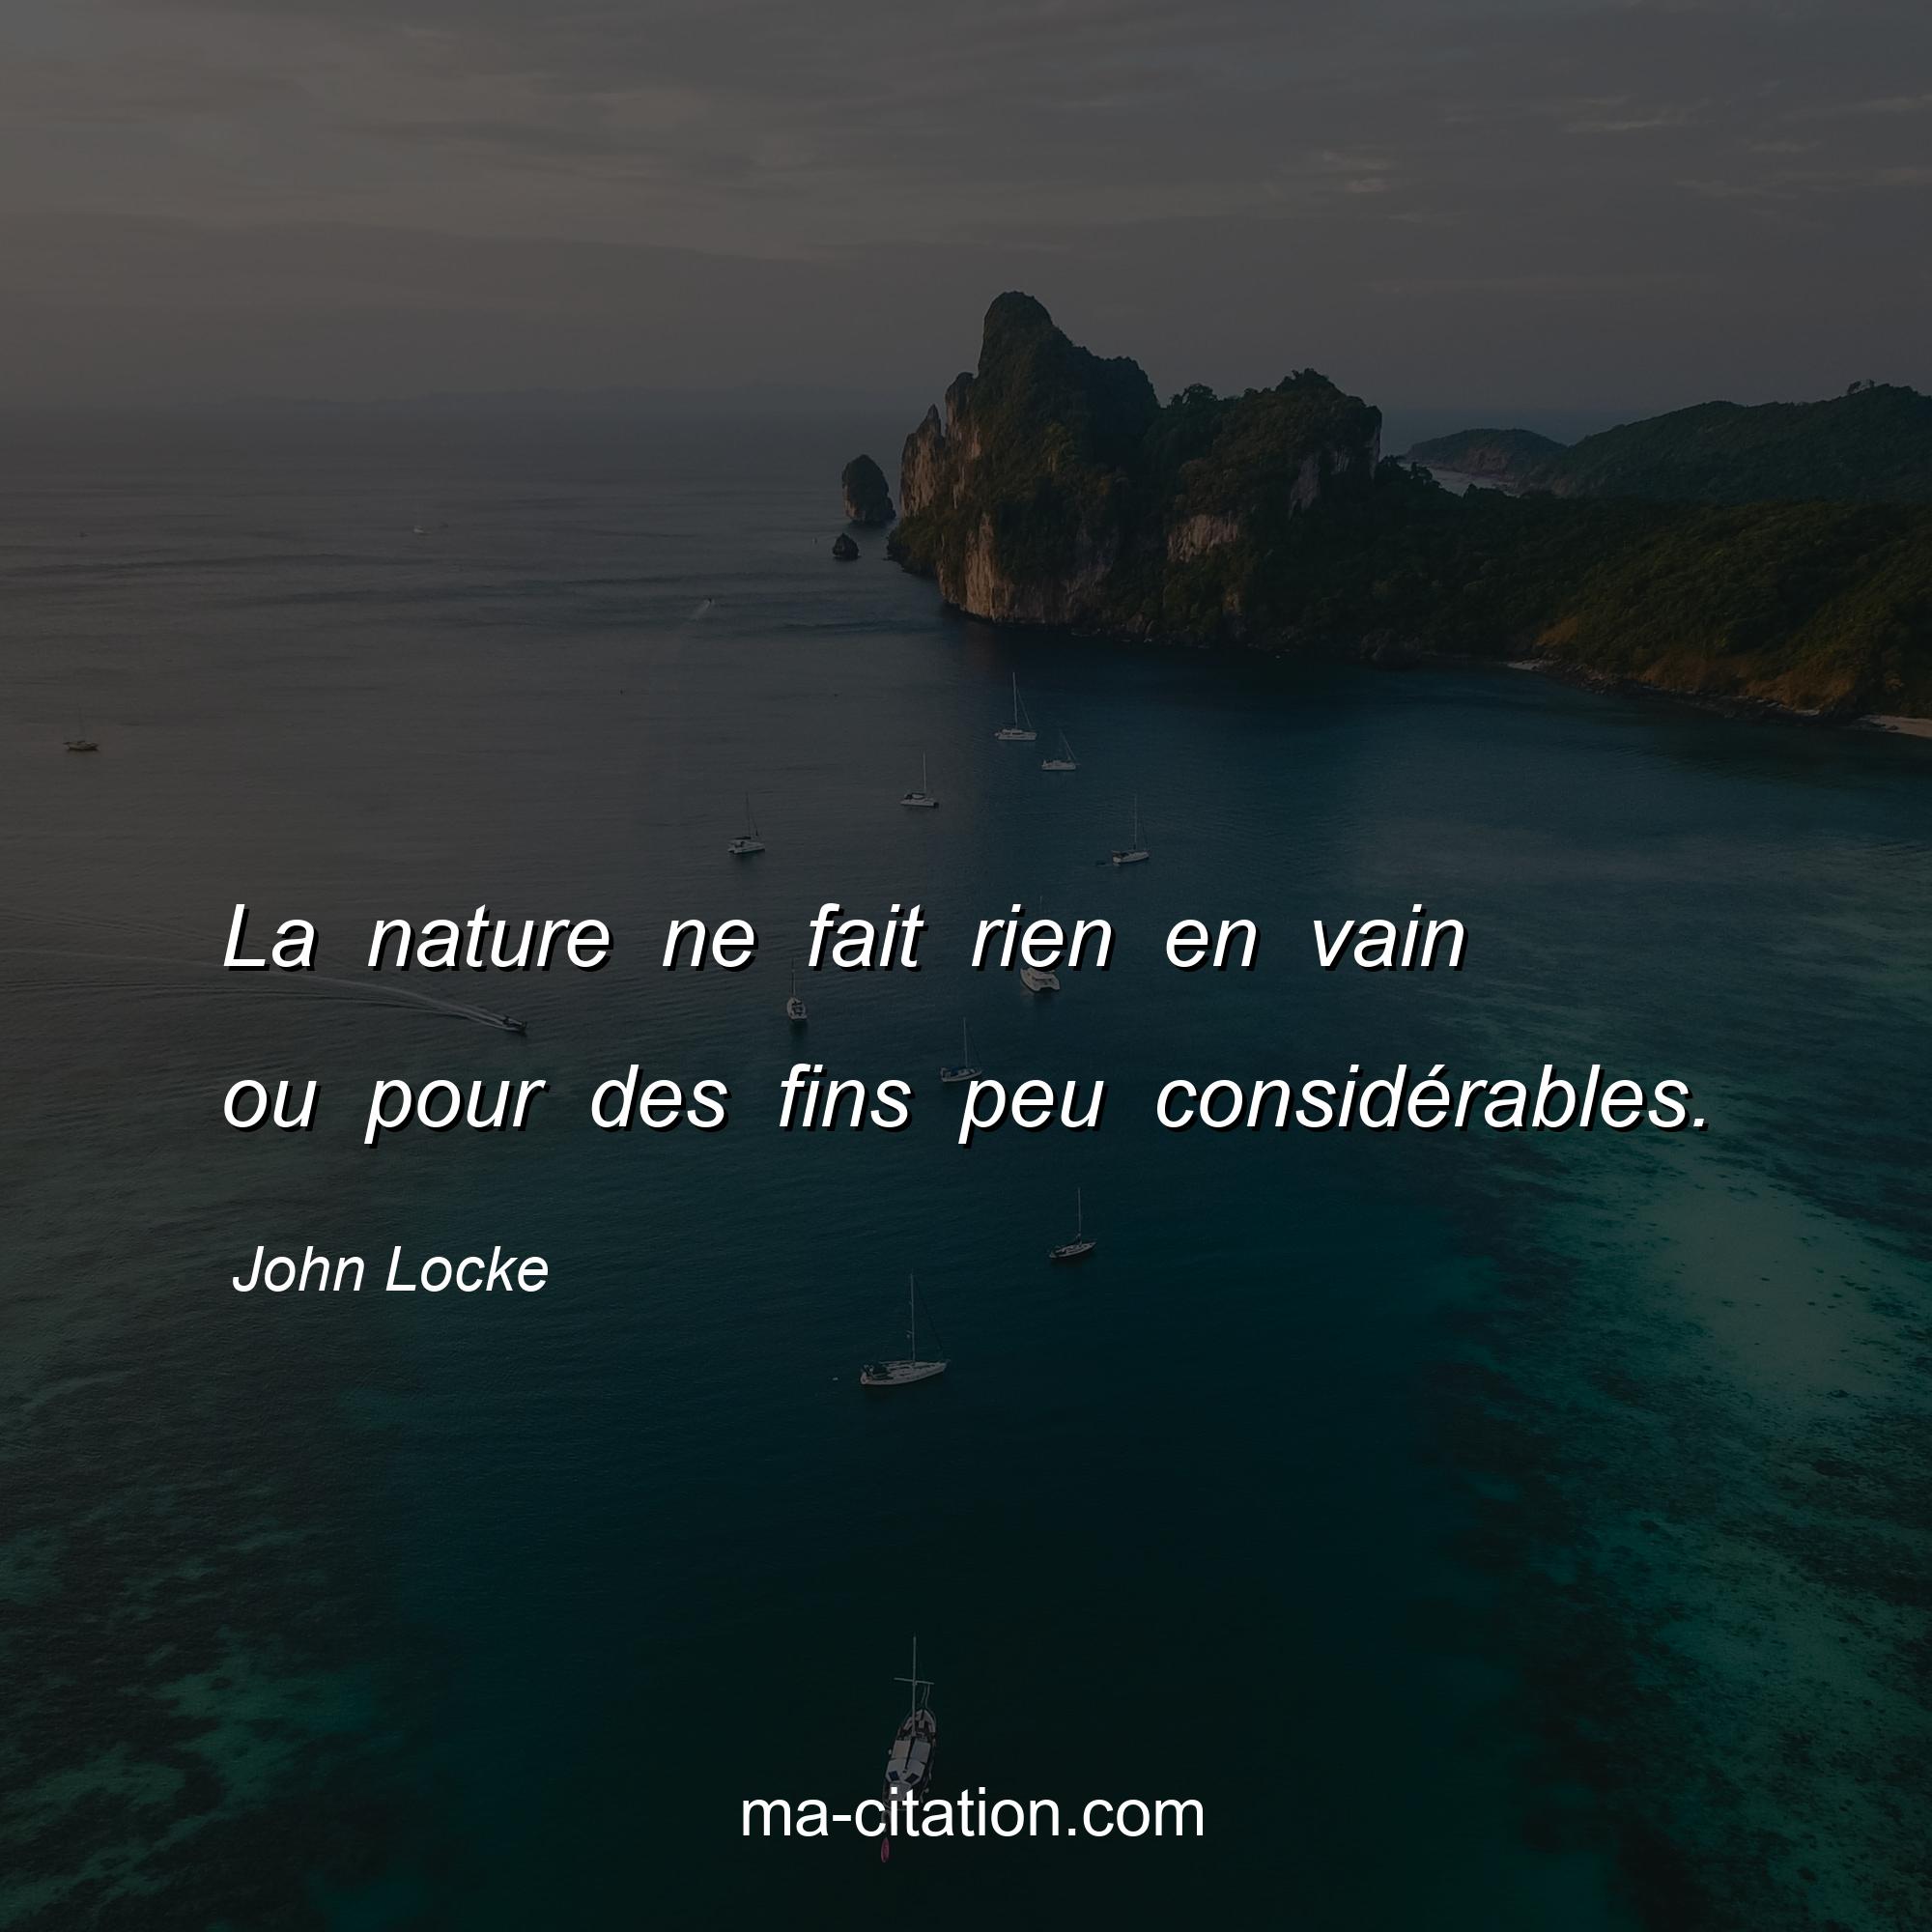 John Locke : La nature ne fait rien en vain ou pour des fins peu considérables.